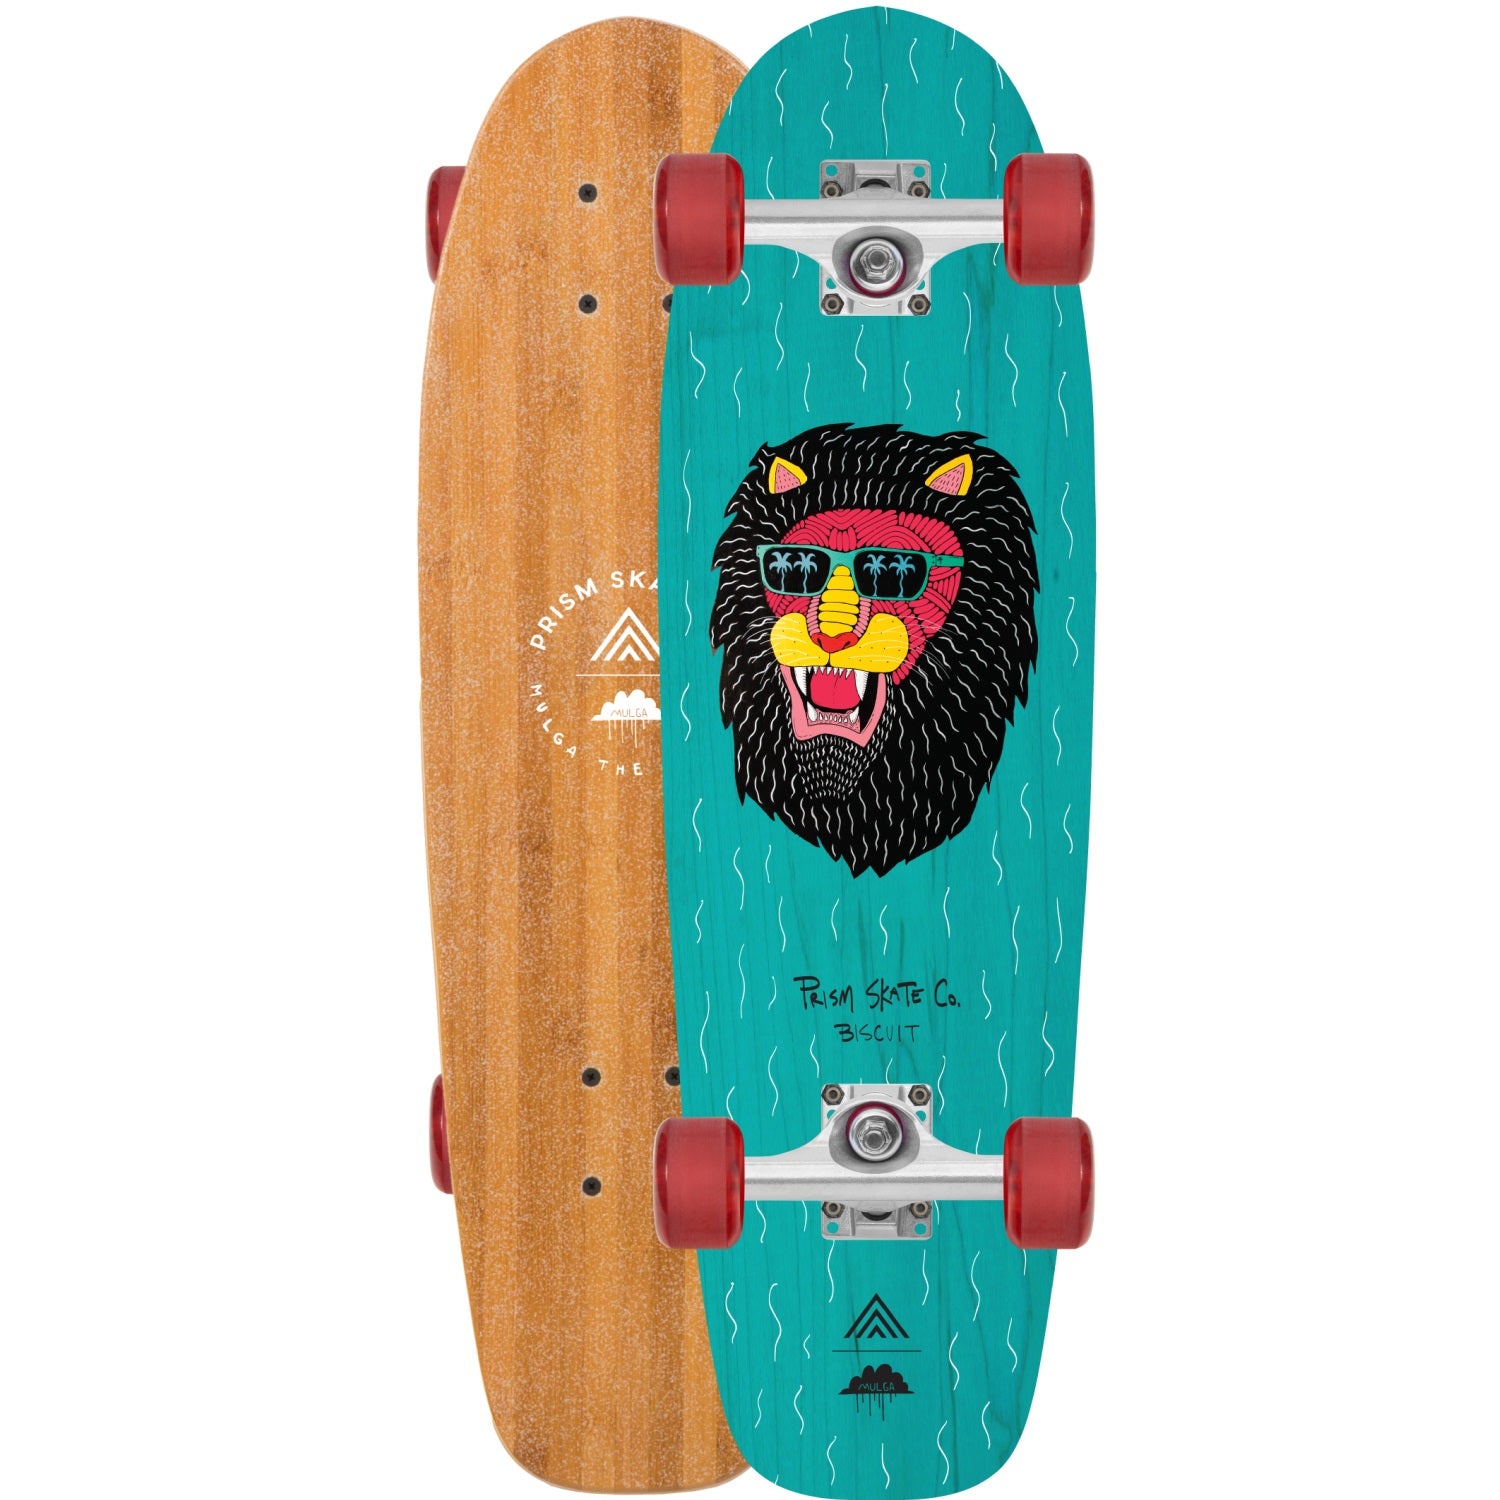 Prism Biscuit Skateboard Complete